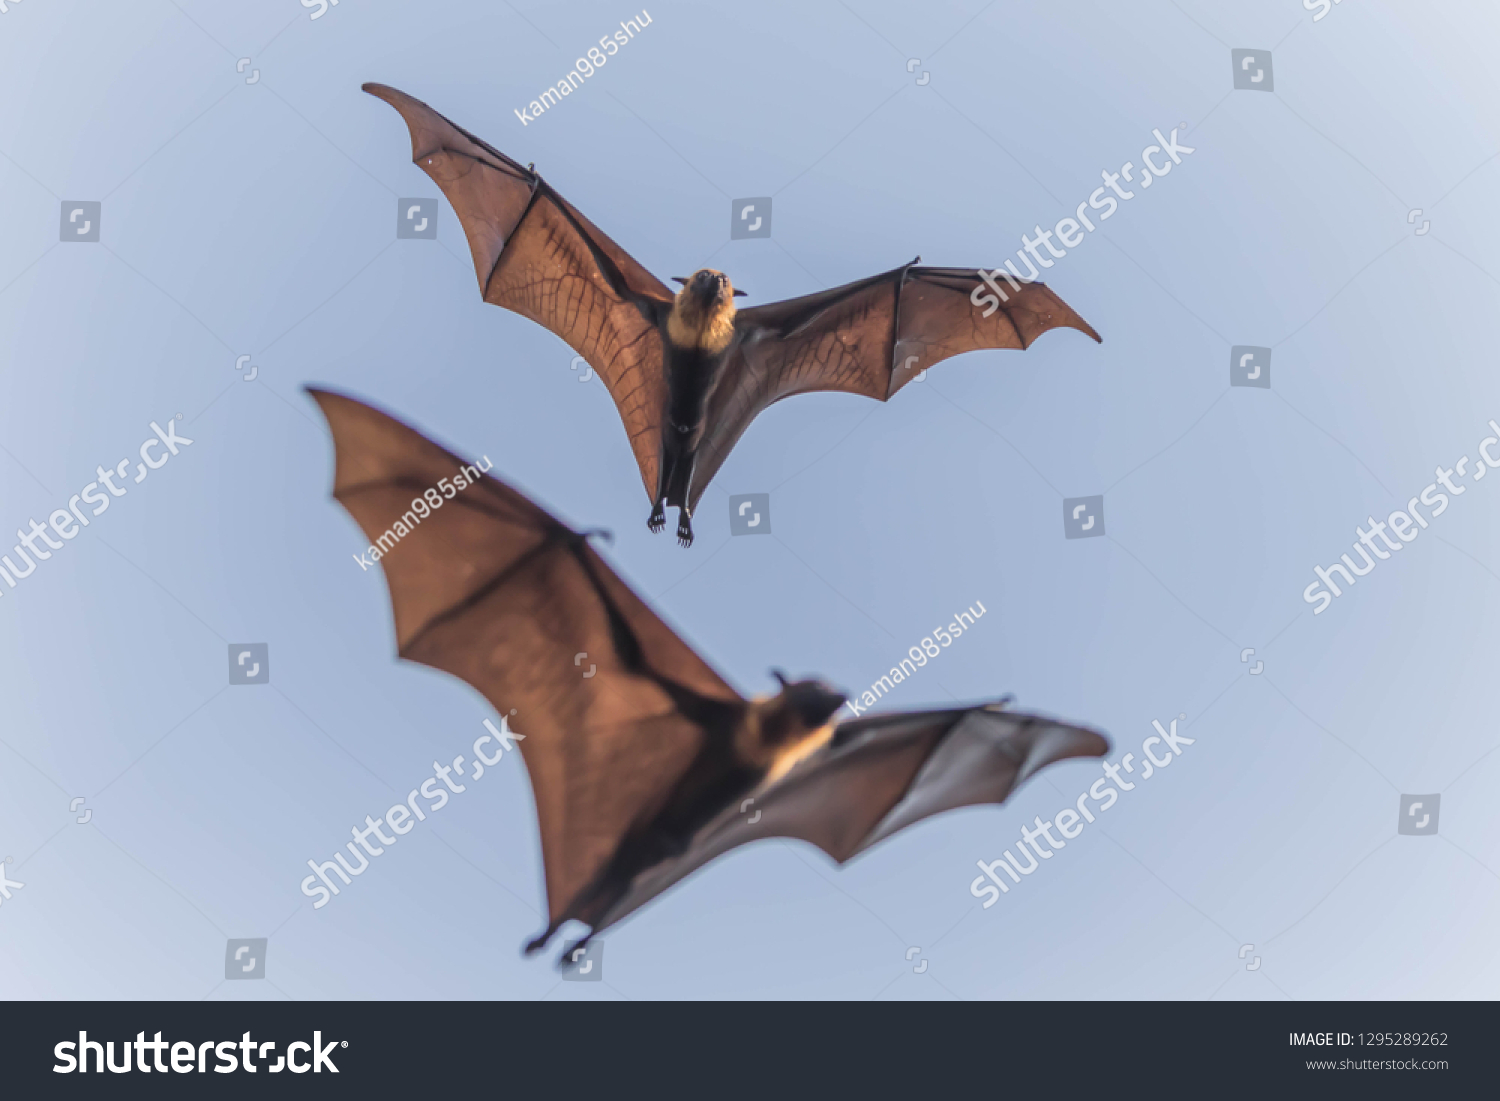 bat body